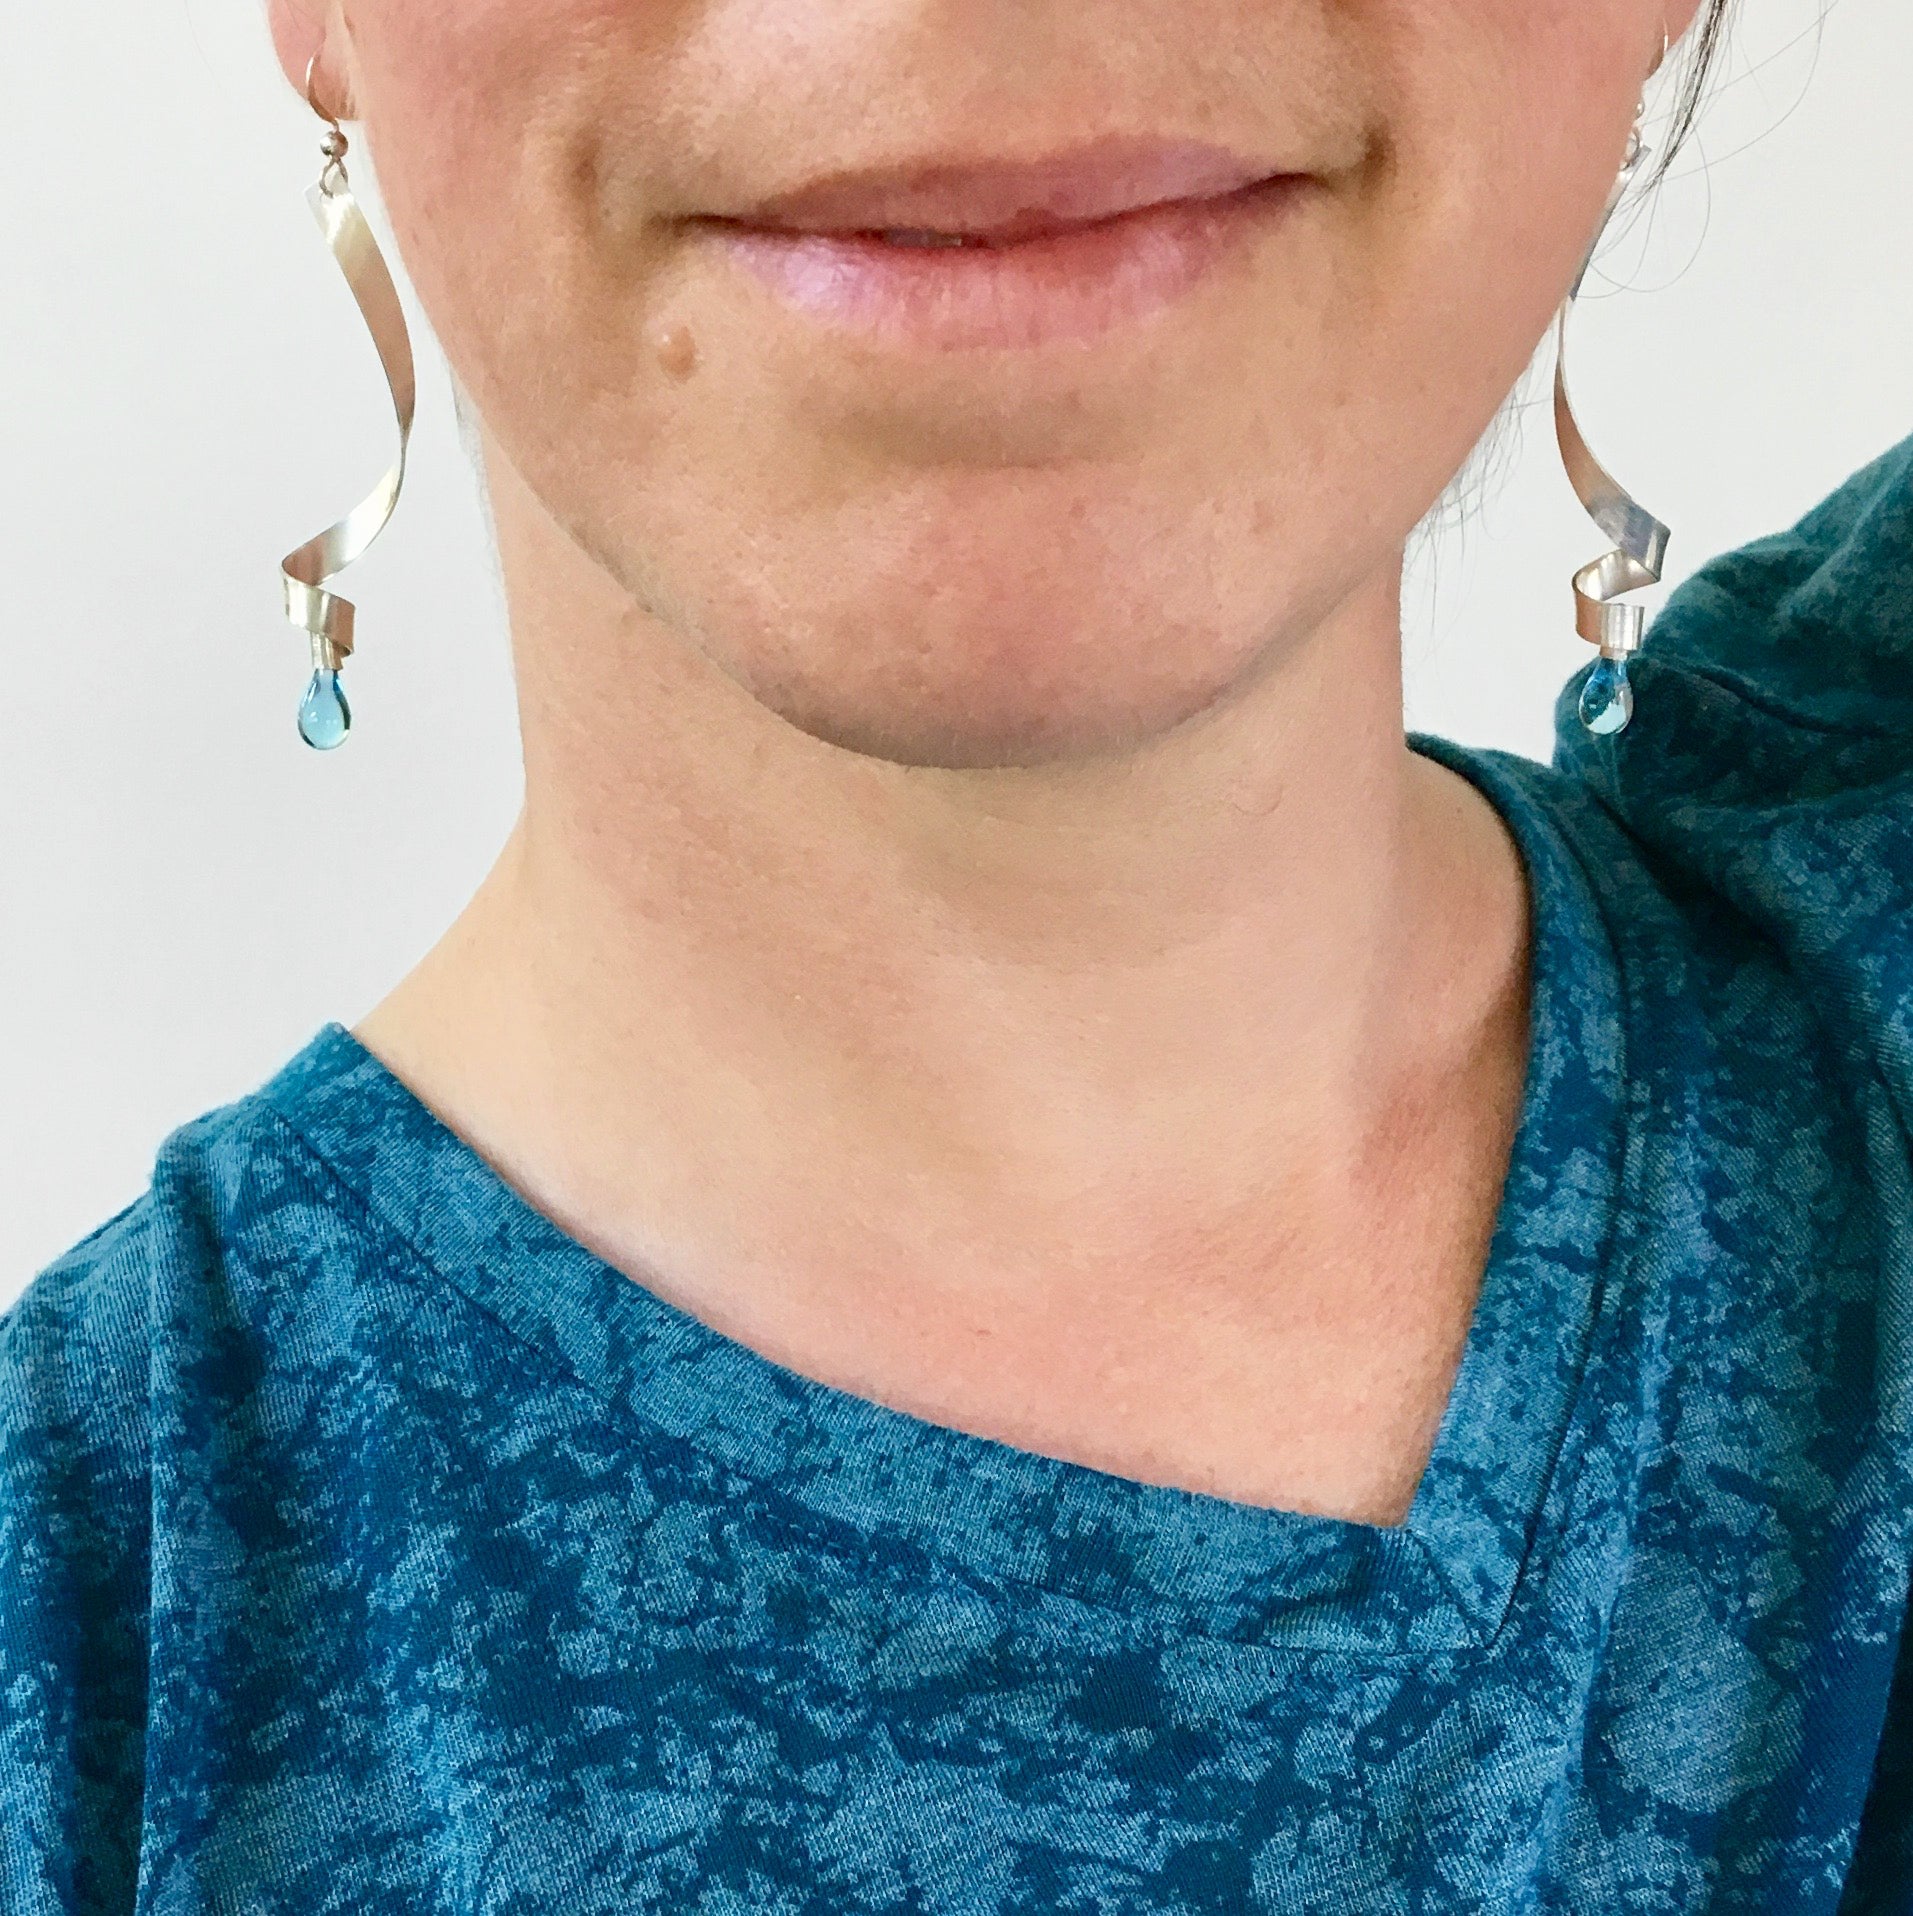 Ribbon Earrings, Long - glass Earrings by Sundrop Jewelry